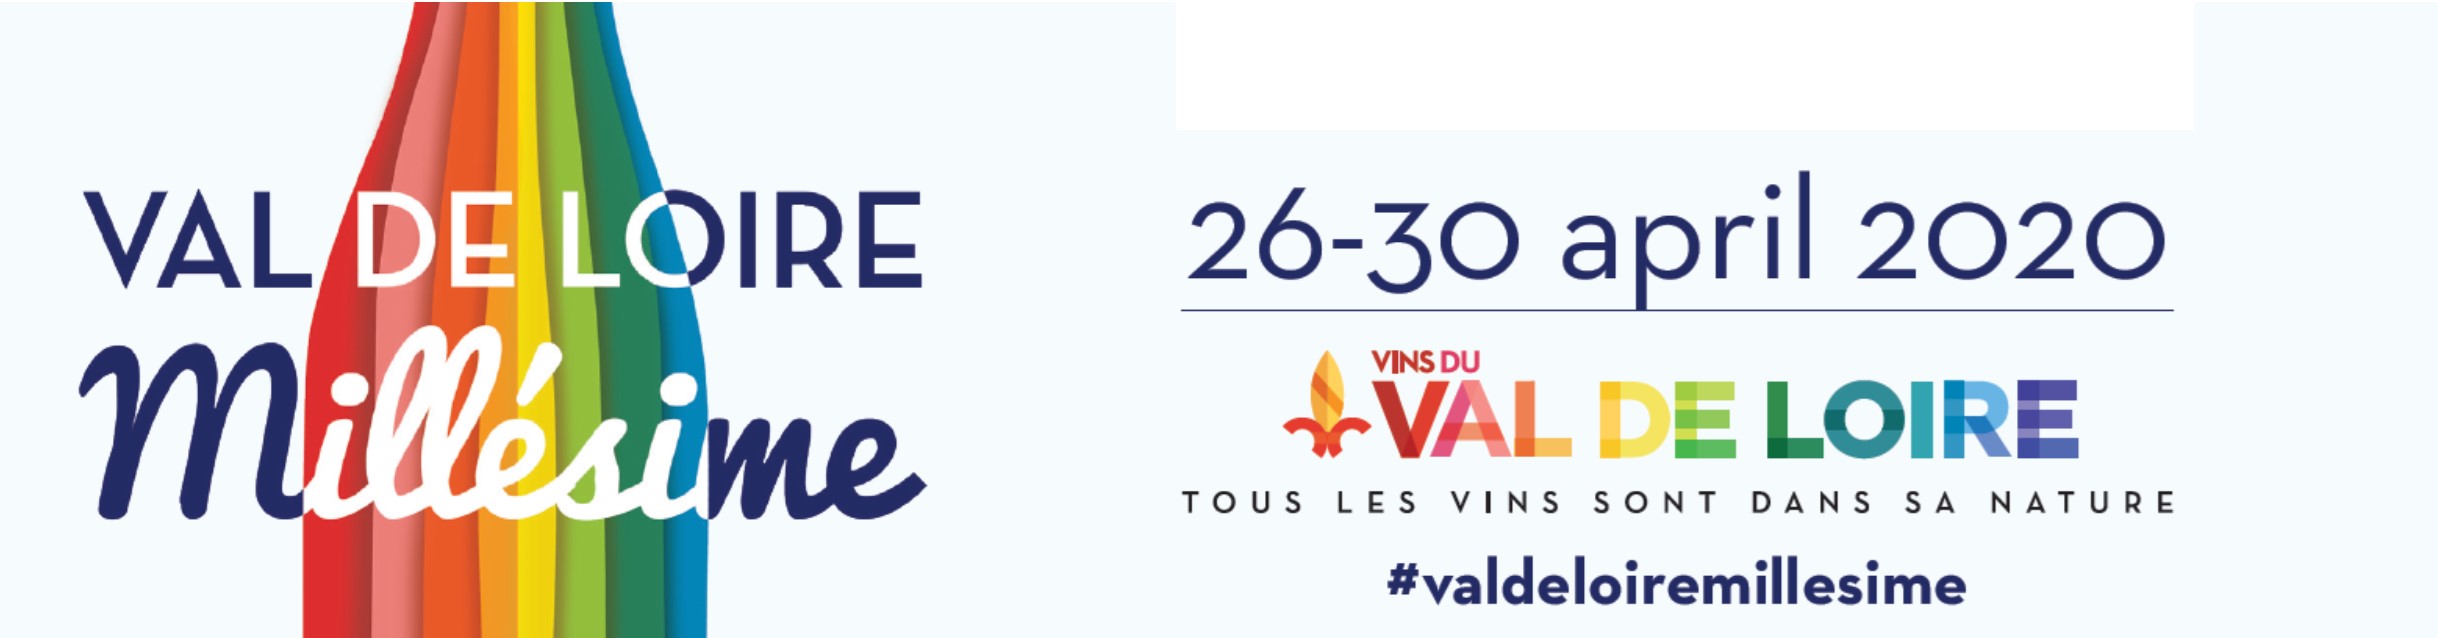 Illustration of Val de Loire Millésime 2020